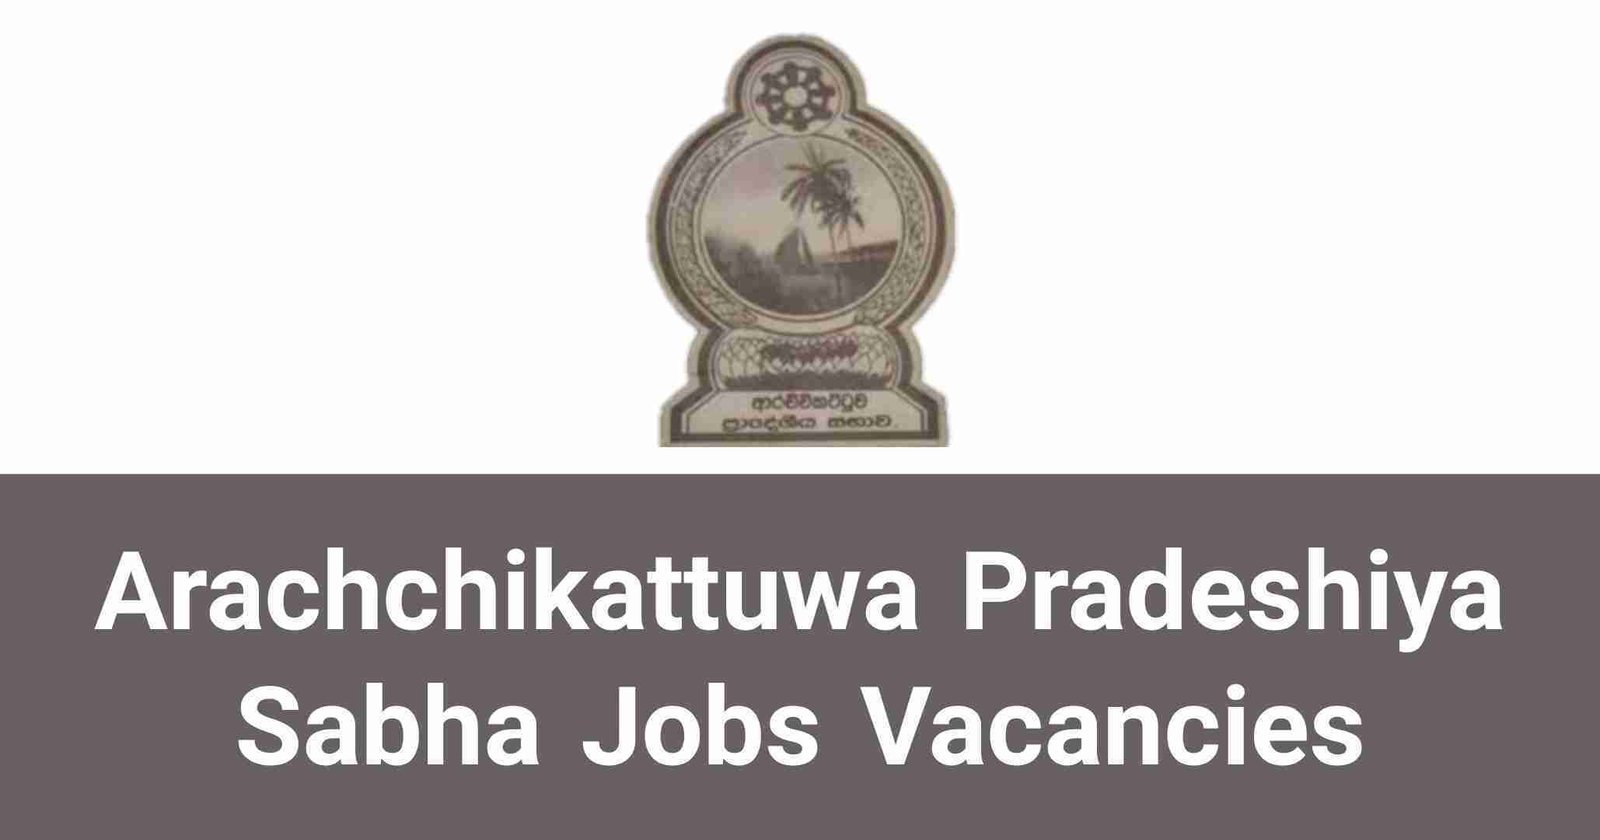 Arachchikattuwa Pradeshiya Sabha Jobs Vacancies